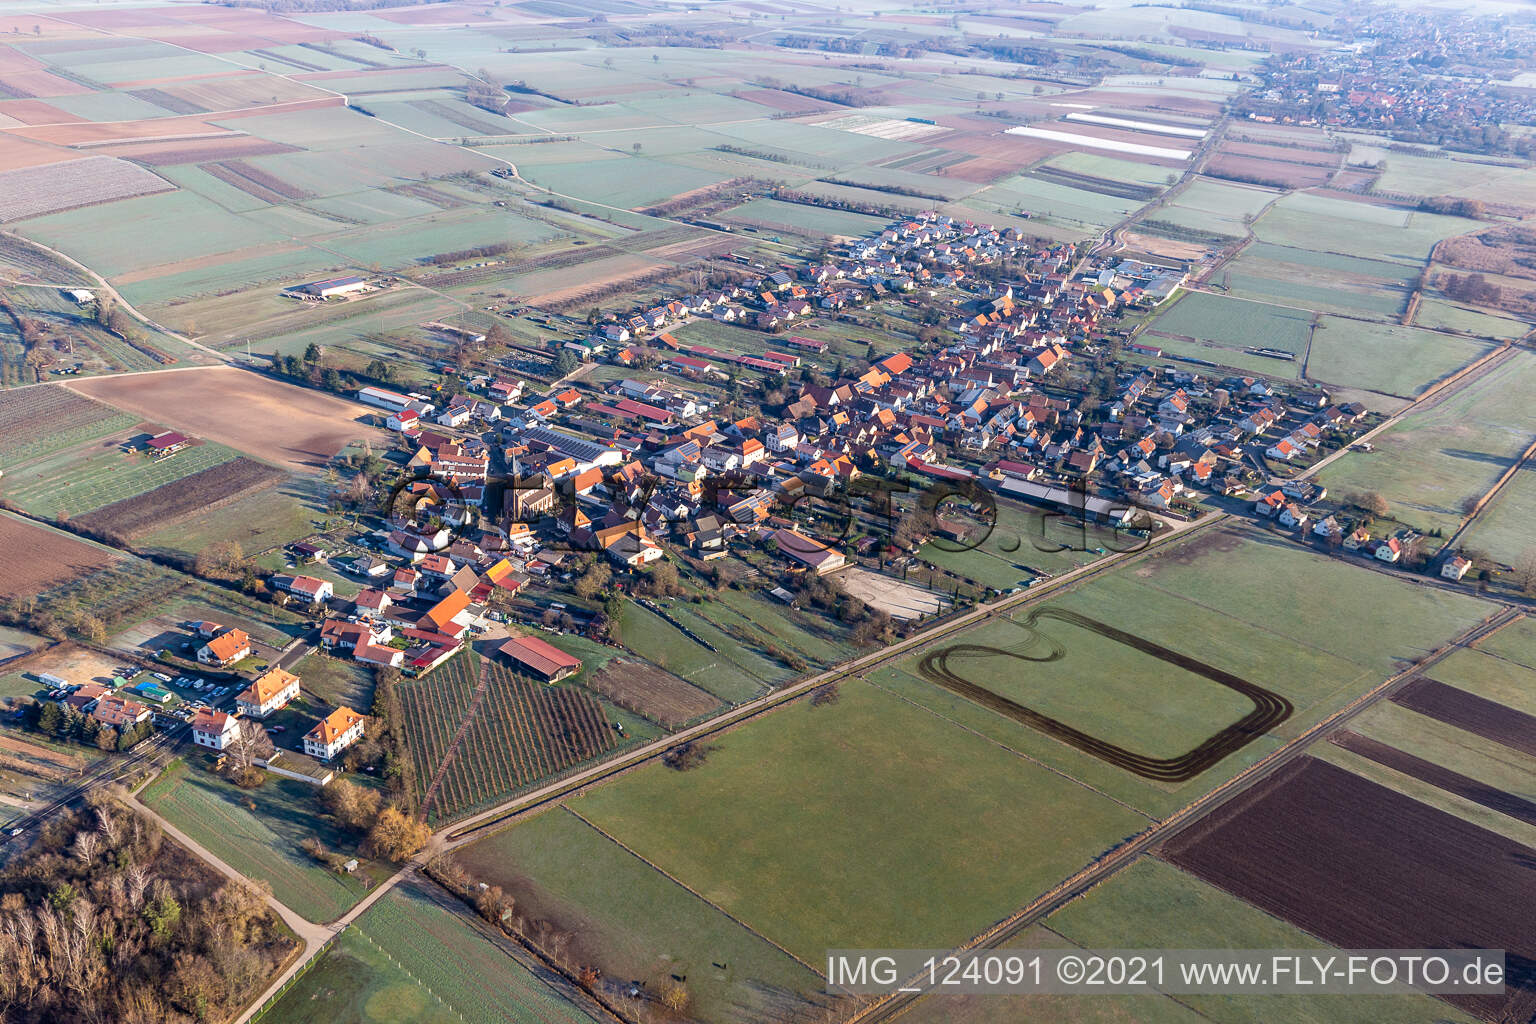 Schweighofen im Bundesland Rheinland-Pfalz, Deutschland aus der Luft betrachtet